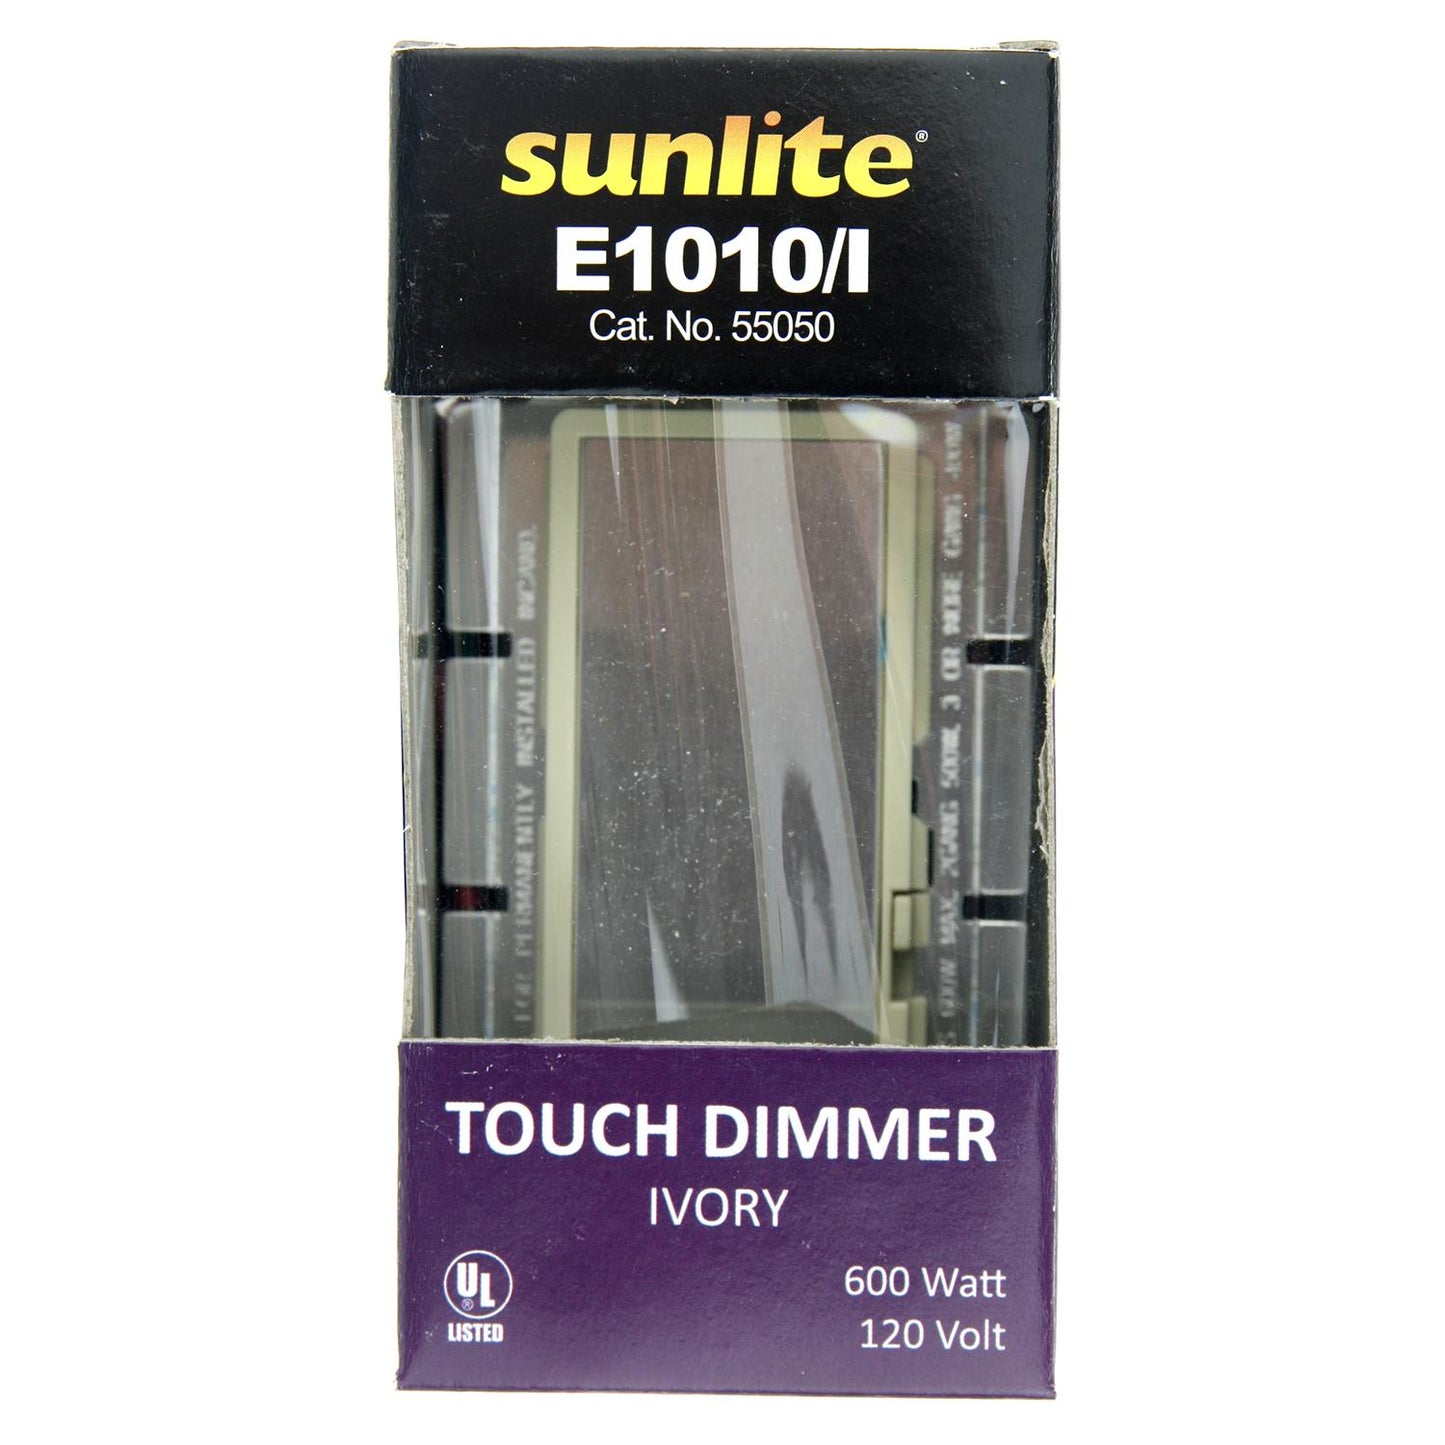 Sunlite E1010/I Touch Dimmer, Ivory